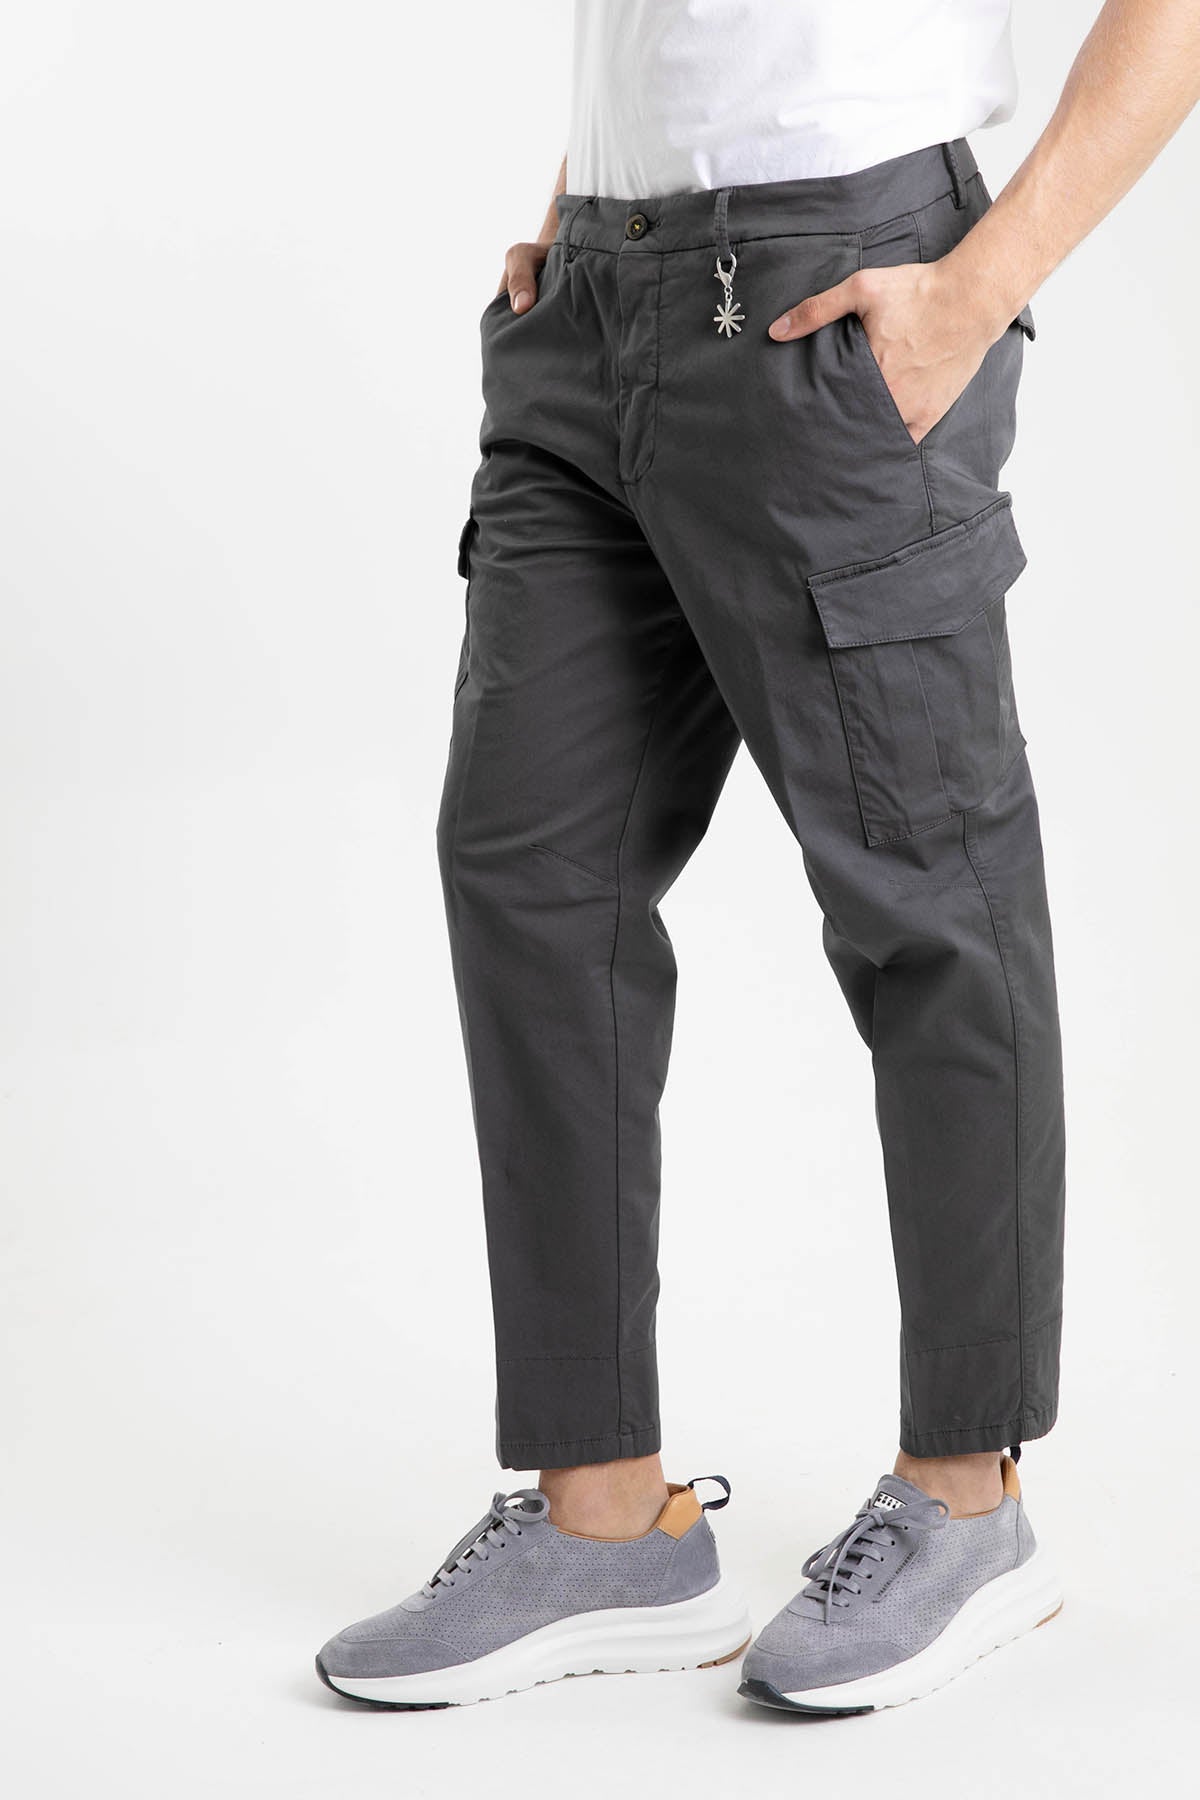 Manuel Ritz Baggy Fit Yıkamalı Kargo Pantolon-Libas Trendy Fashion Store